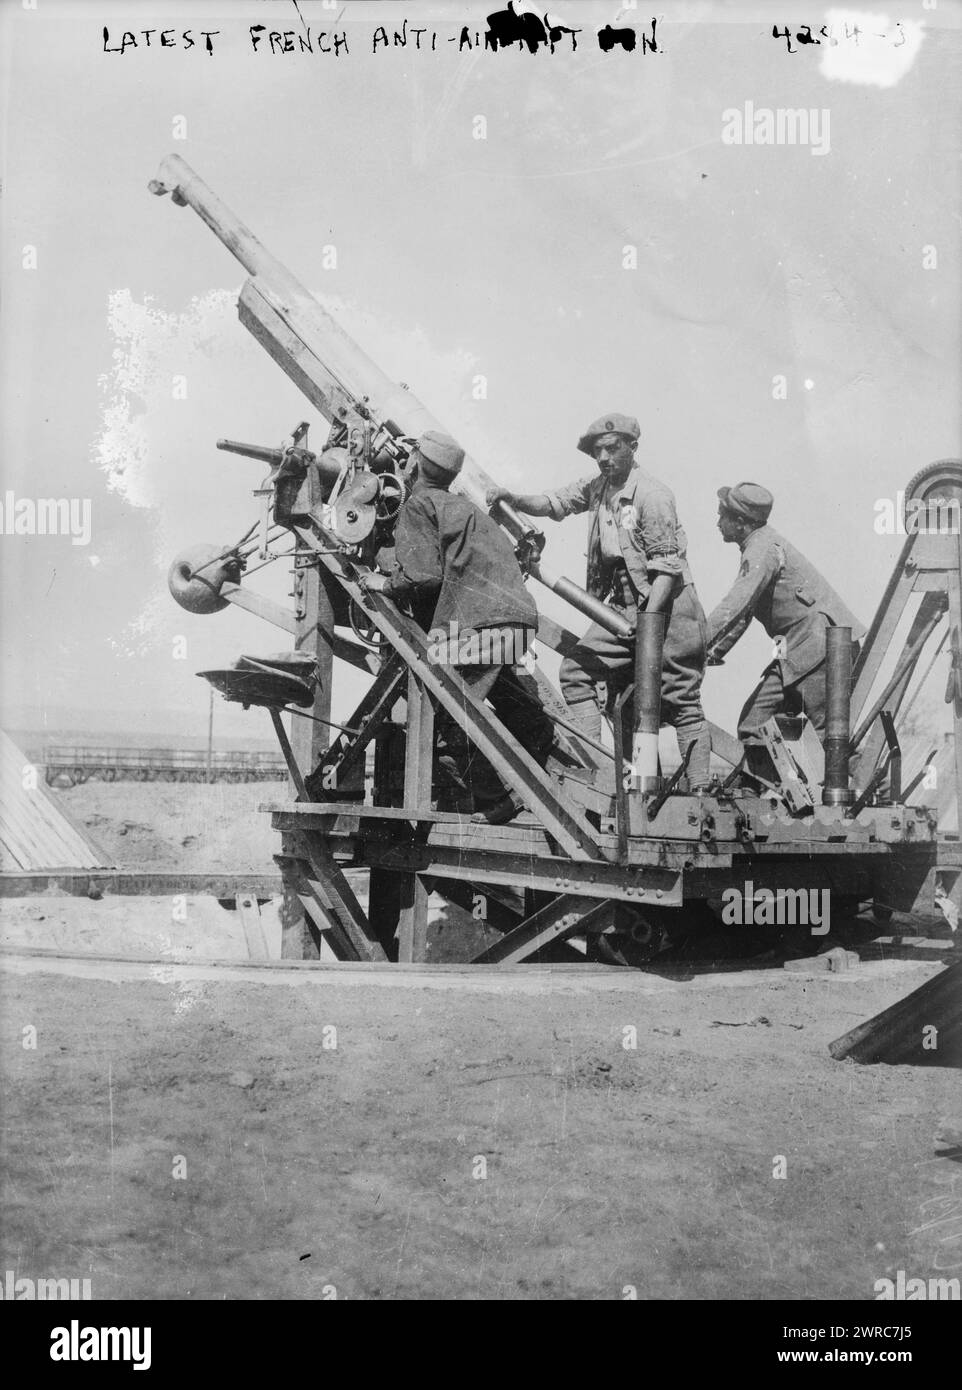 Dernier canon antiaérien français, la photographie montre un canon de campagne français de 75 mm qui a été monté pour être utilisé comme arme antiaérienne, pendant la campagne de Salonique pendant la première Guerre mondiale, 1917 novembre 29, Guerre mondiale, 1914-1918, négatifs en verre, 1 négatif : verre Banque D'Images